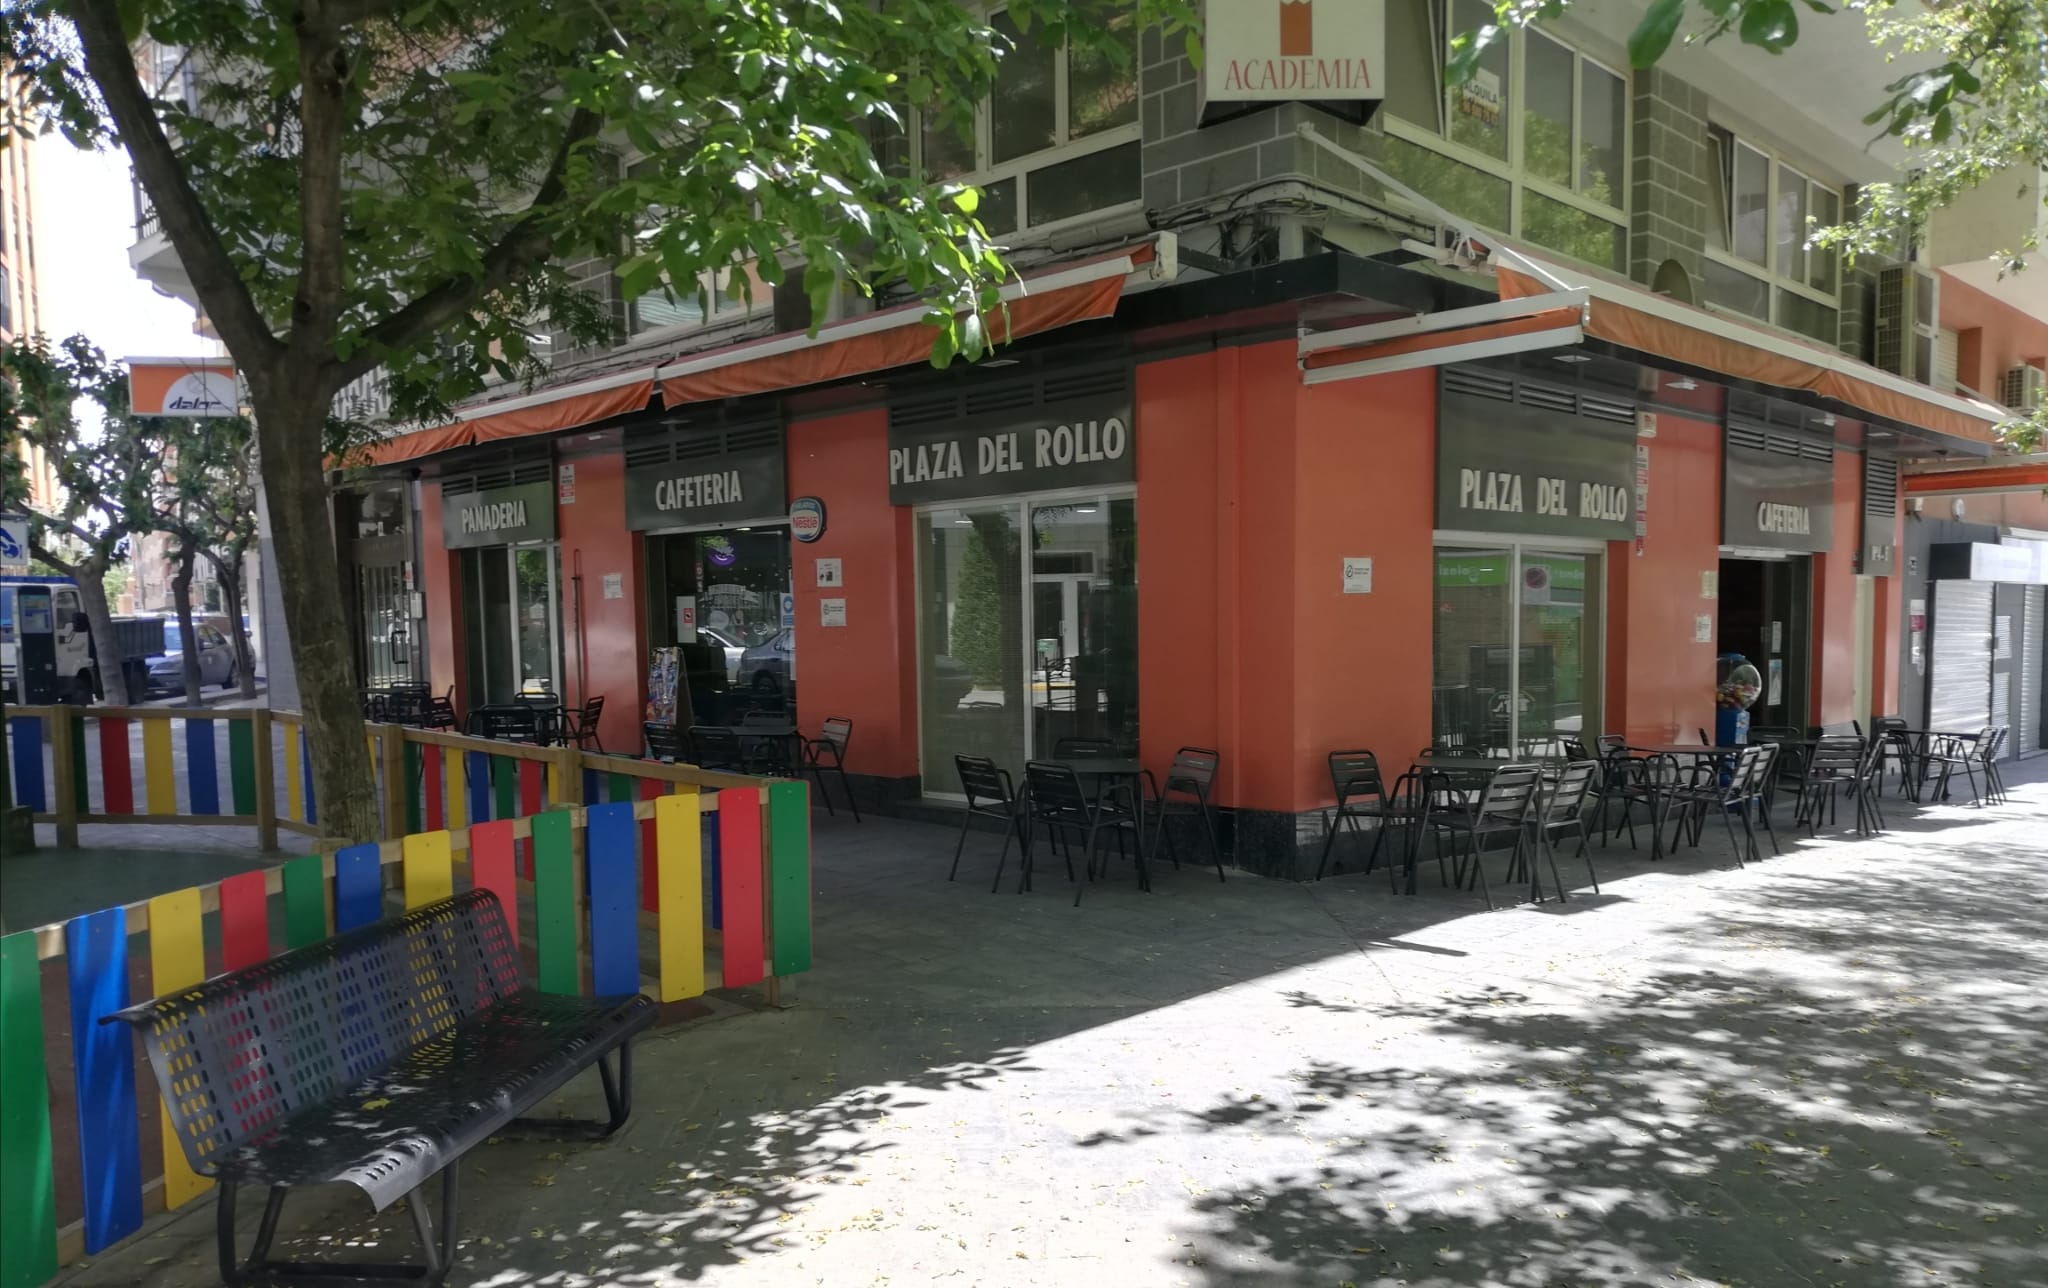 Cafetería Plaza del Rollo, el lugar ideal para una tarde de cervezas